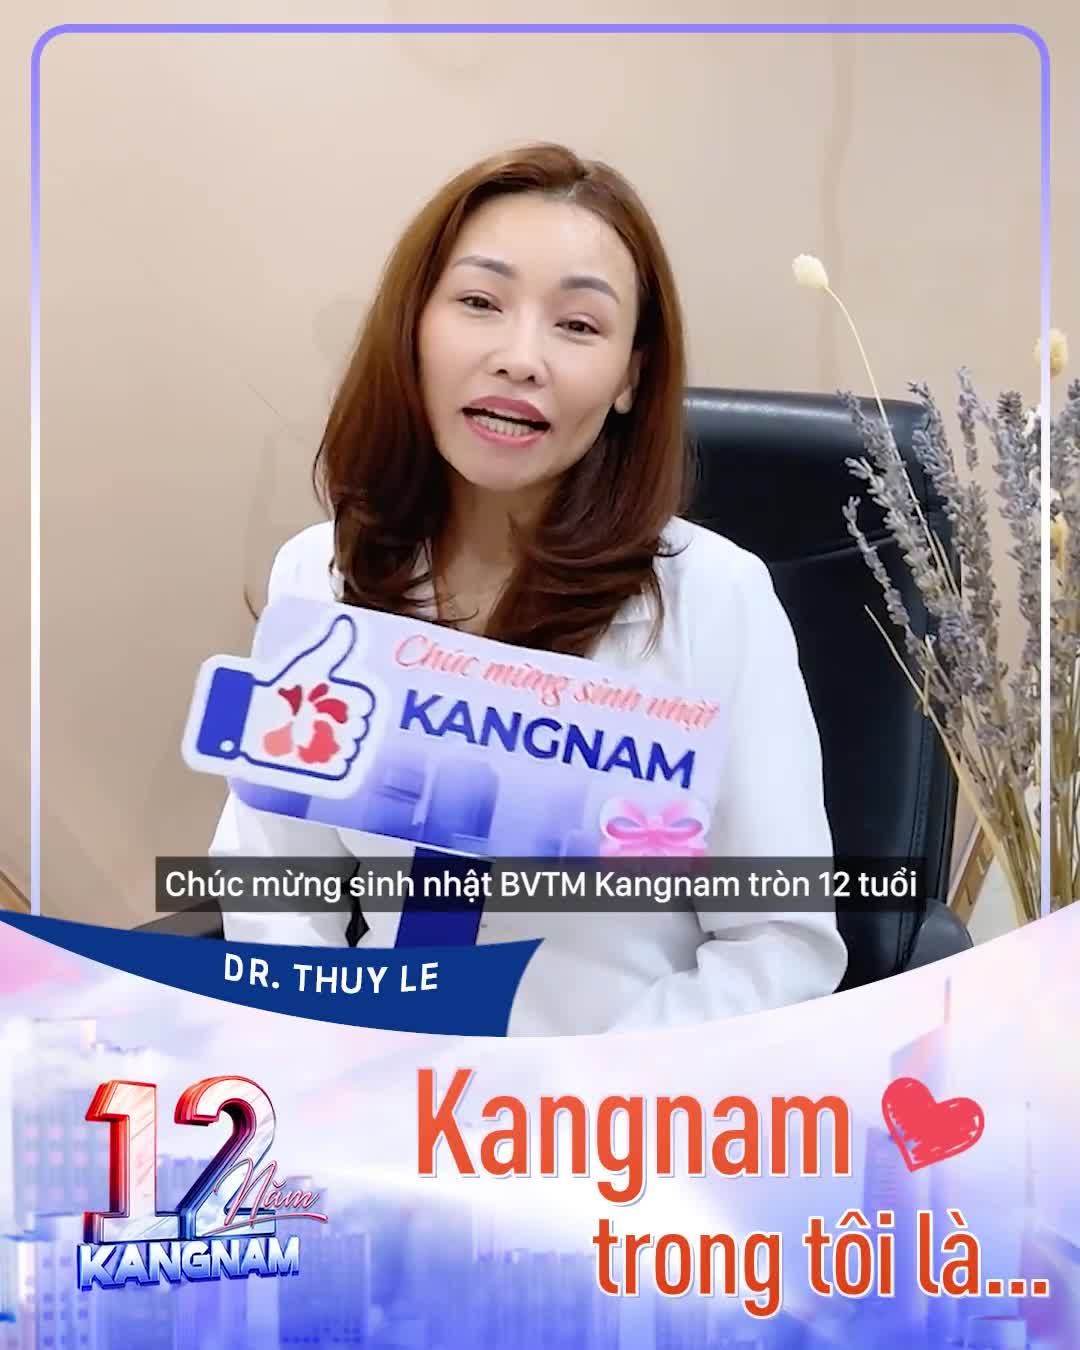 Dr. Thủy Lê - Thạc sĩ, bác sĩ Viện trị liệu và chăm sóc da tại Kangnam